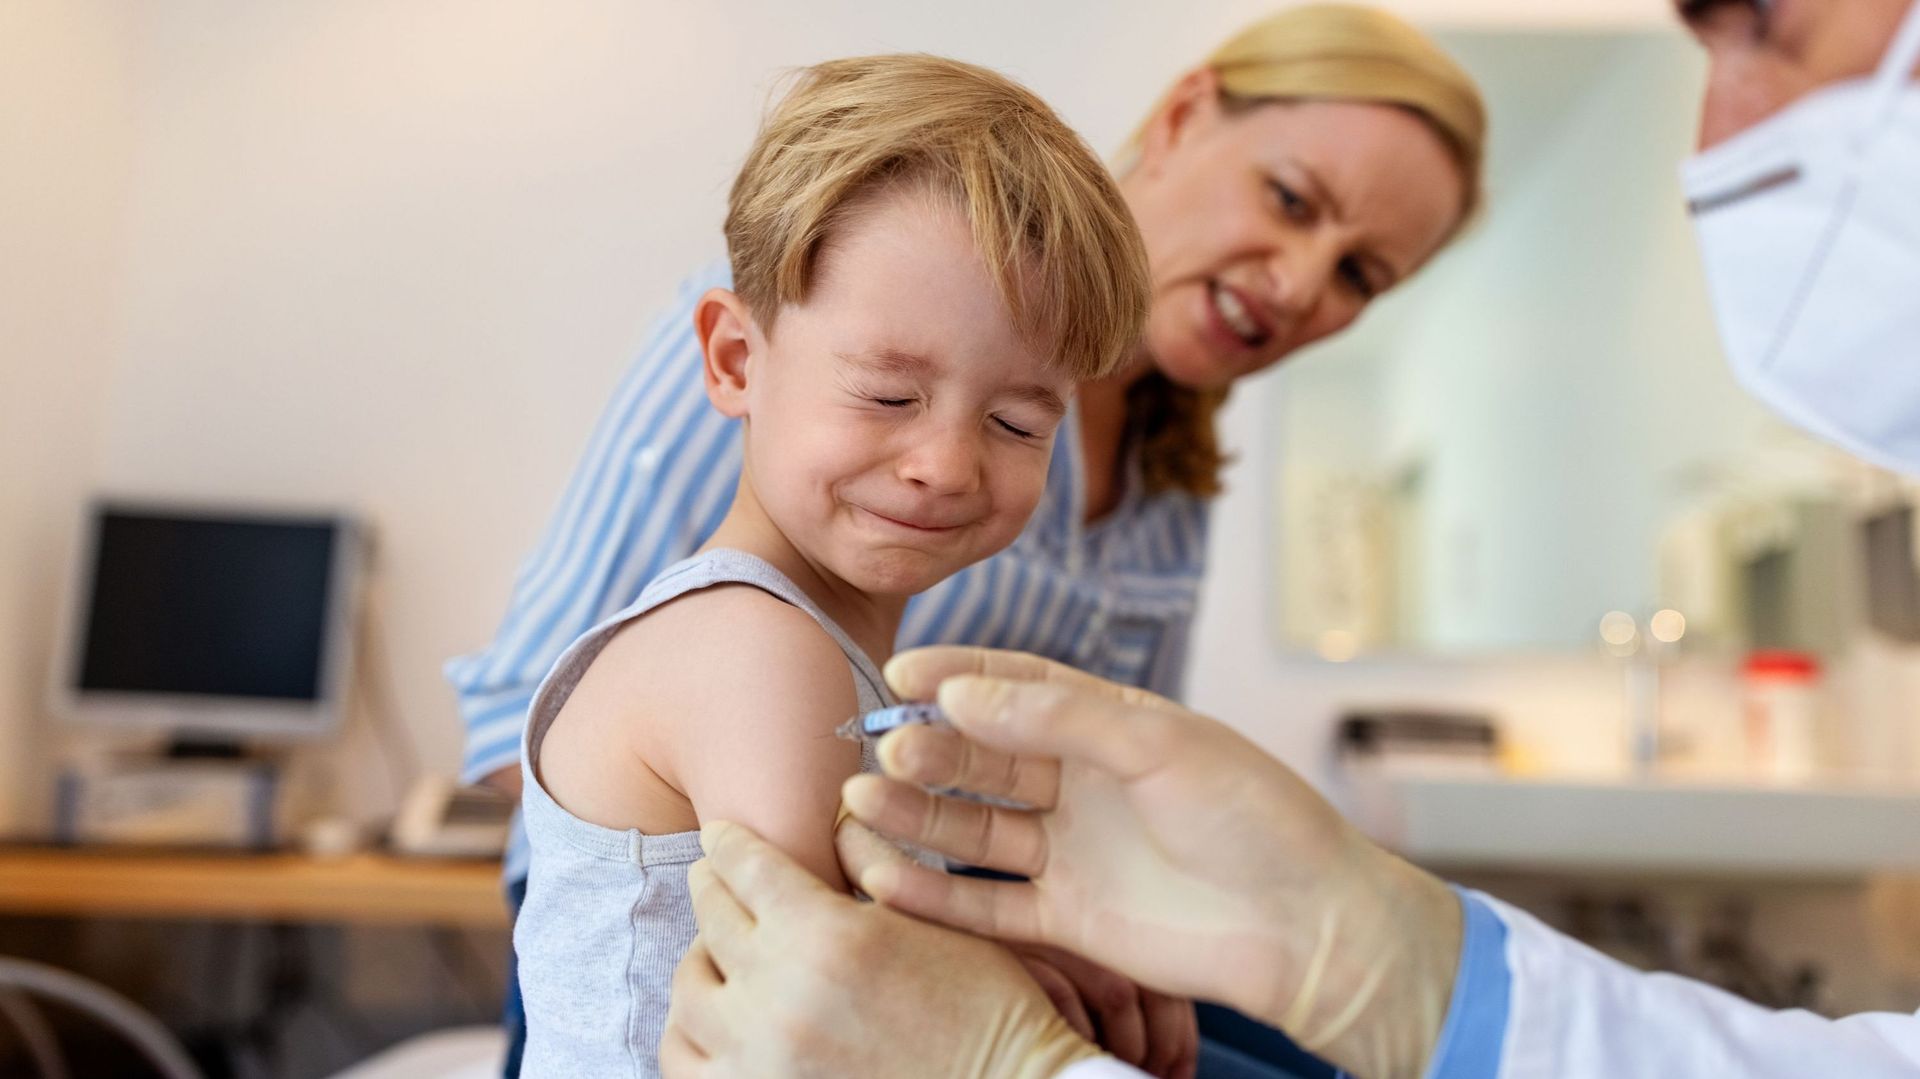 Pfizer/BioNTech demande l’autorisation d’utiliser son vaccin chez les enfants entre 5 et 11 ans